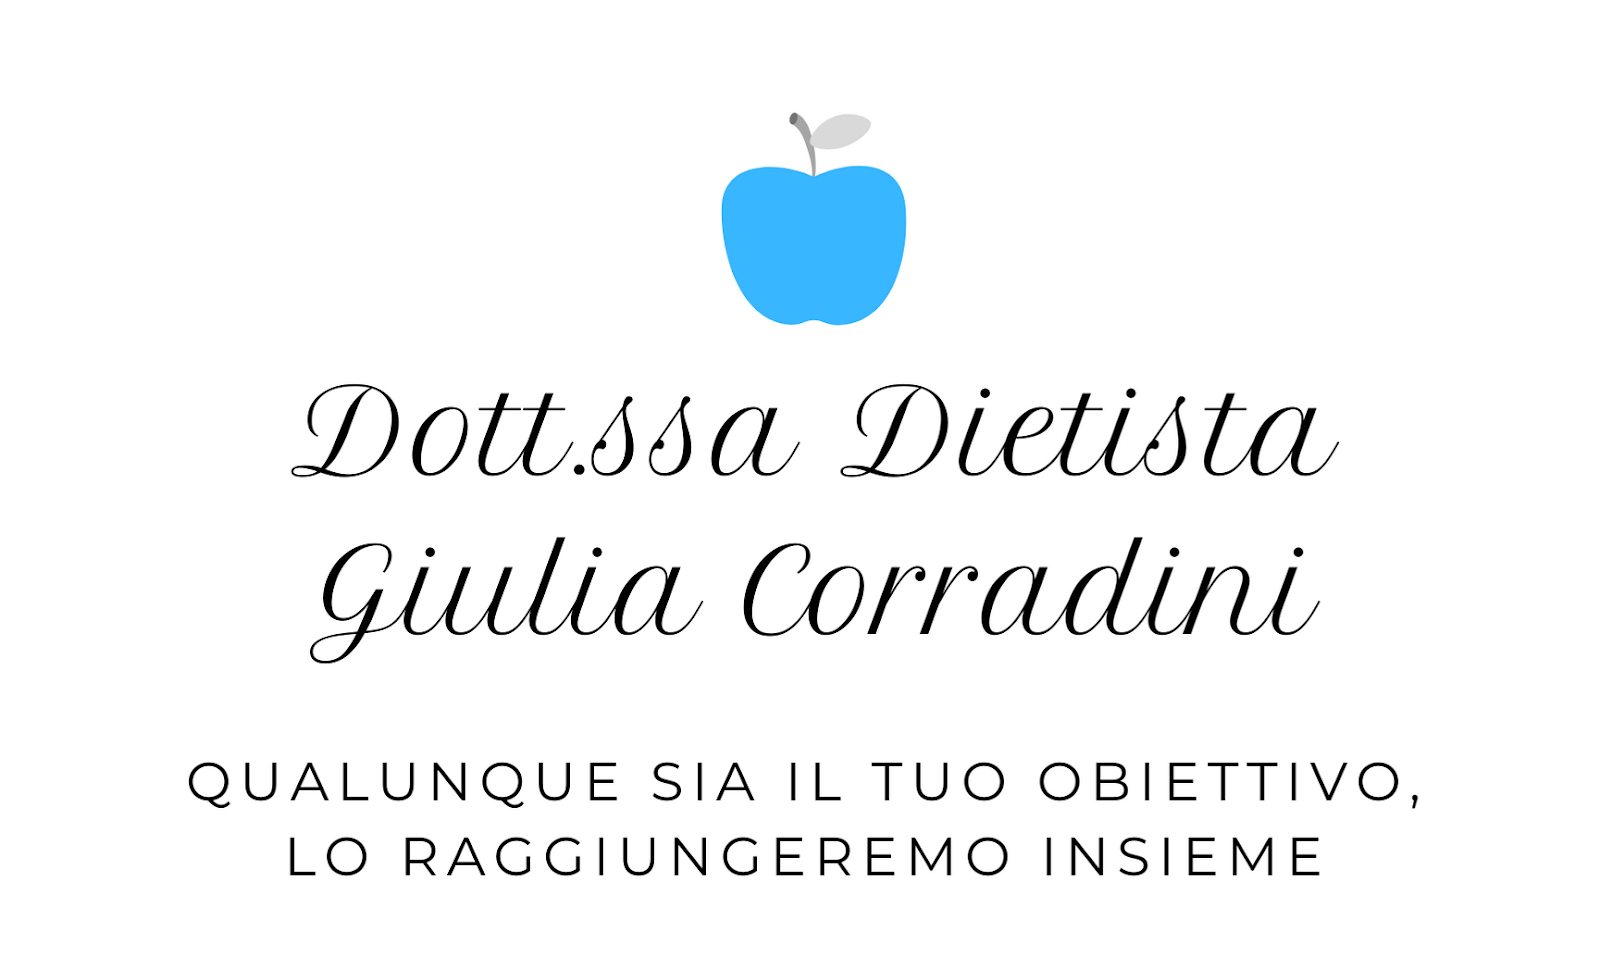 Dott.ssa Giulia Corradini - Dietista